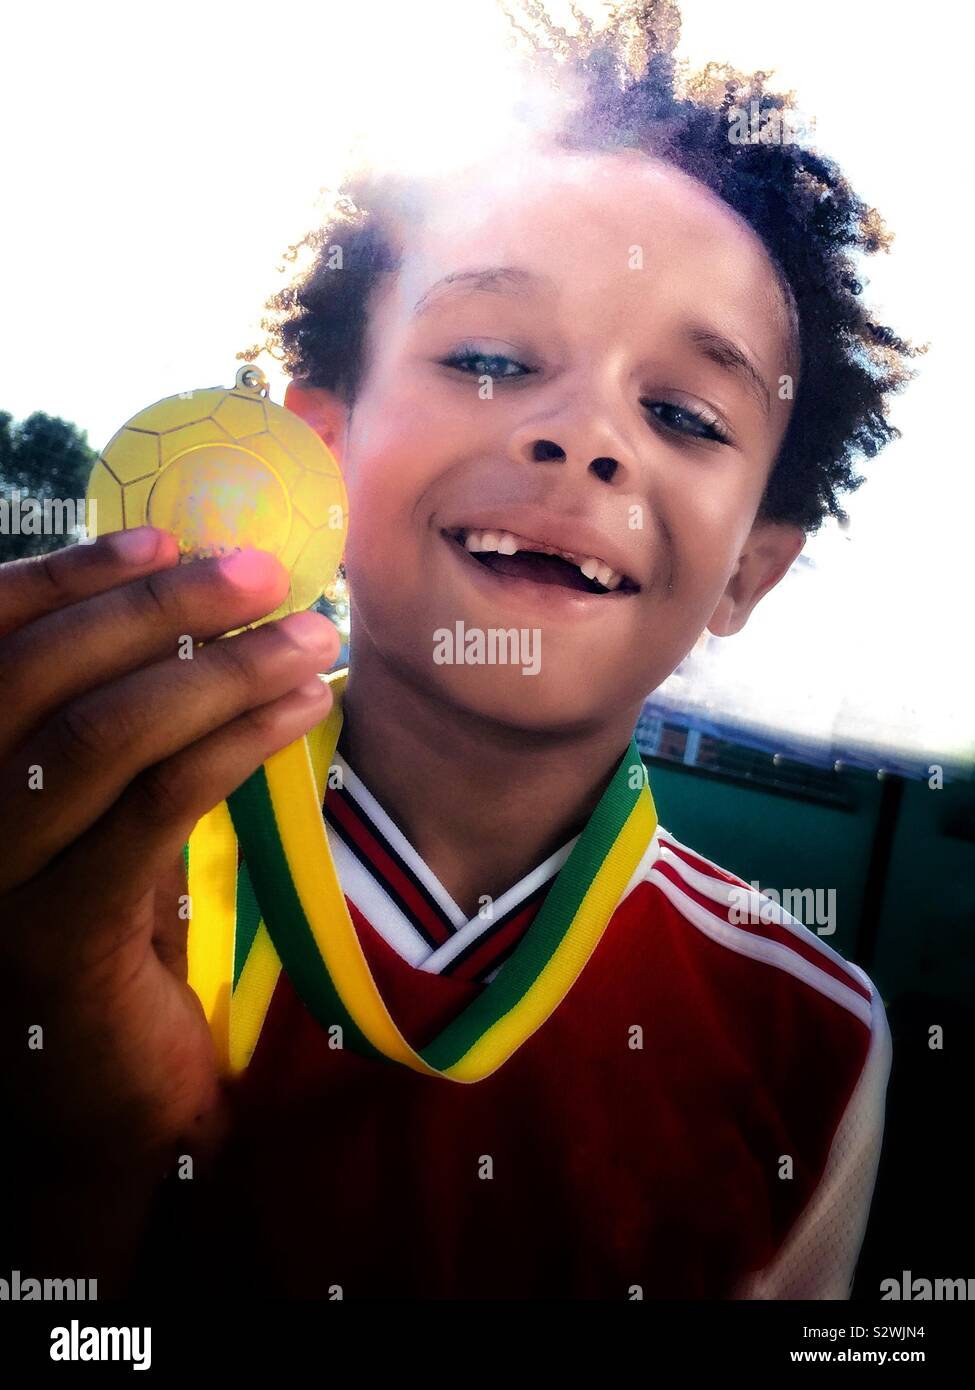 Un garçon montre fièrement sa médaille sportive. Banque D'Images